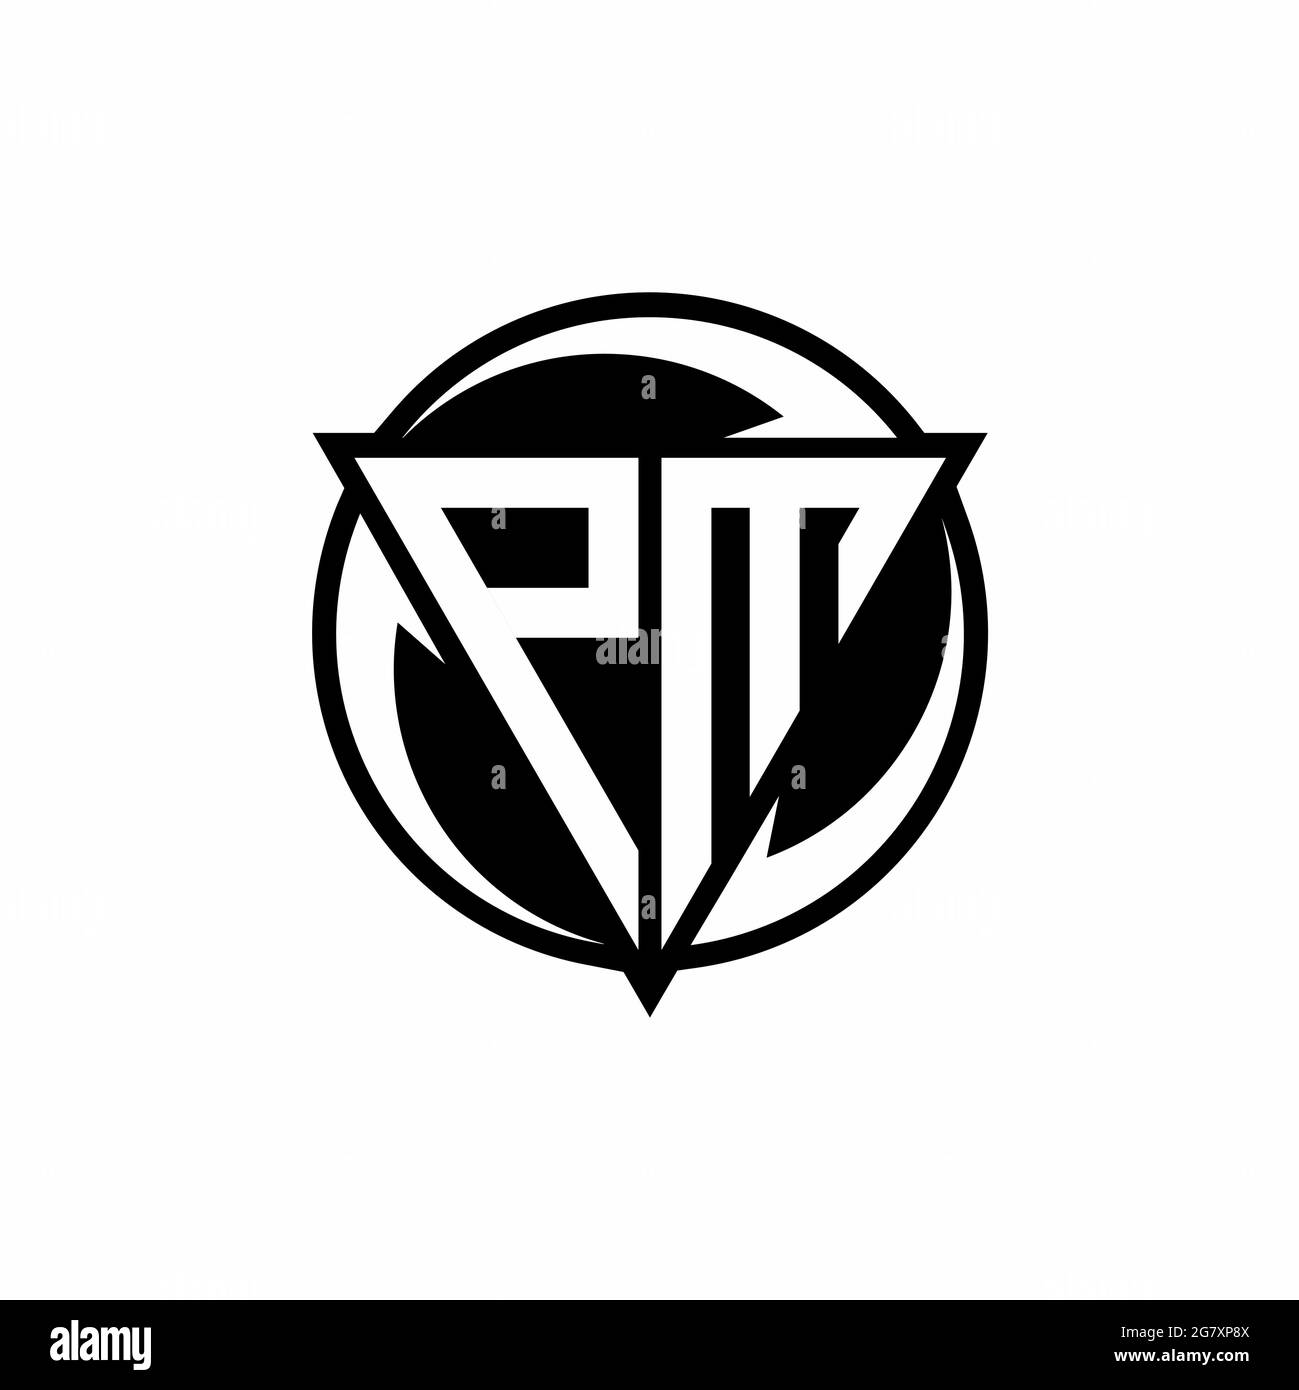 design pm logo images